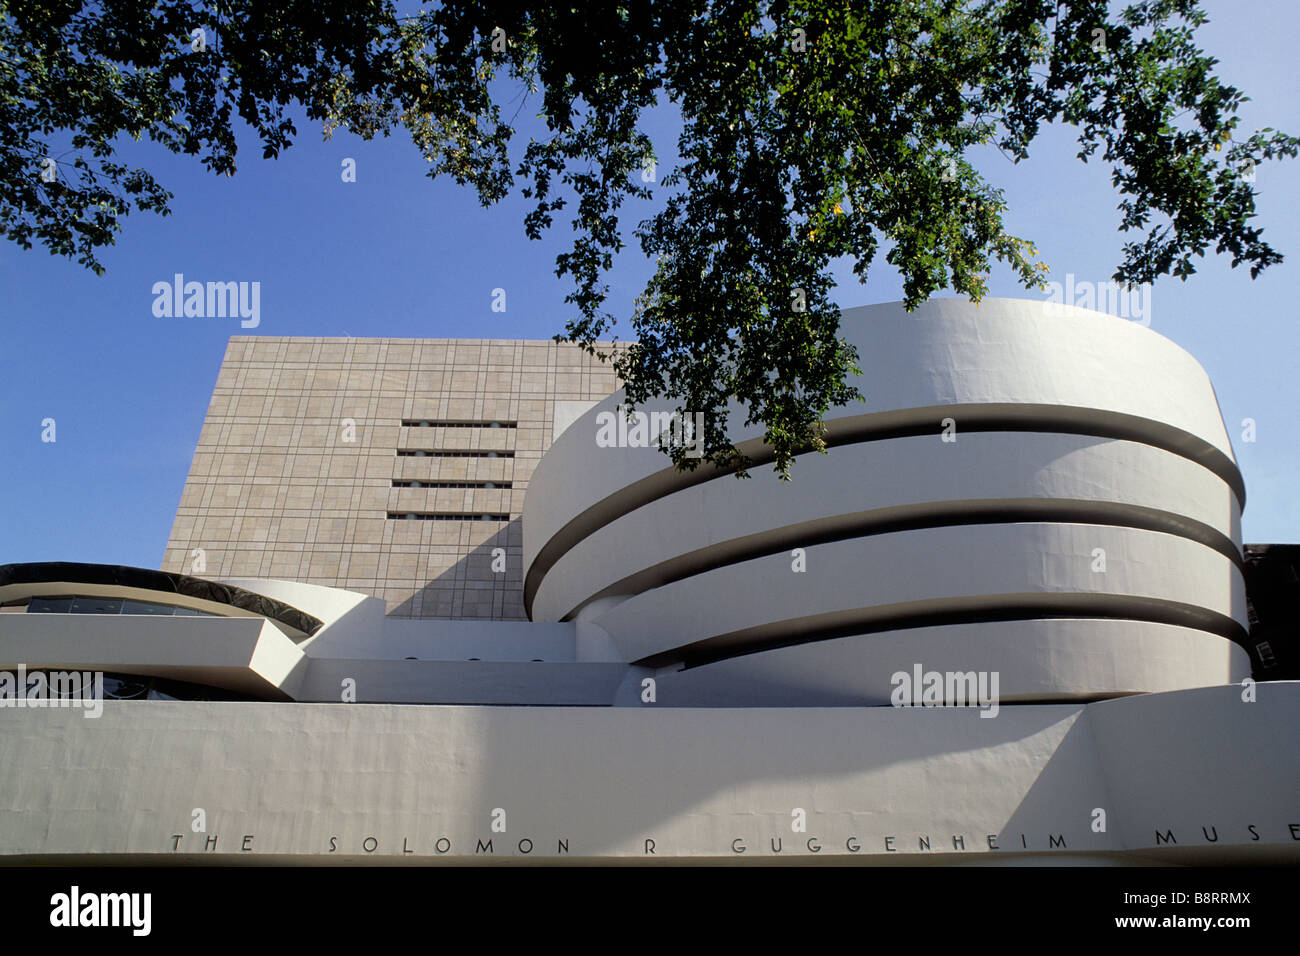 Extérieur du musée Guggenheim sur la Cinquième Avenue, New York. Frank Lloyd Wright architecte. Construction circulaire. Architecture brutaliste UNESCO USA Banque D'Images